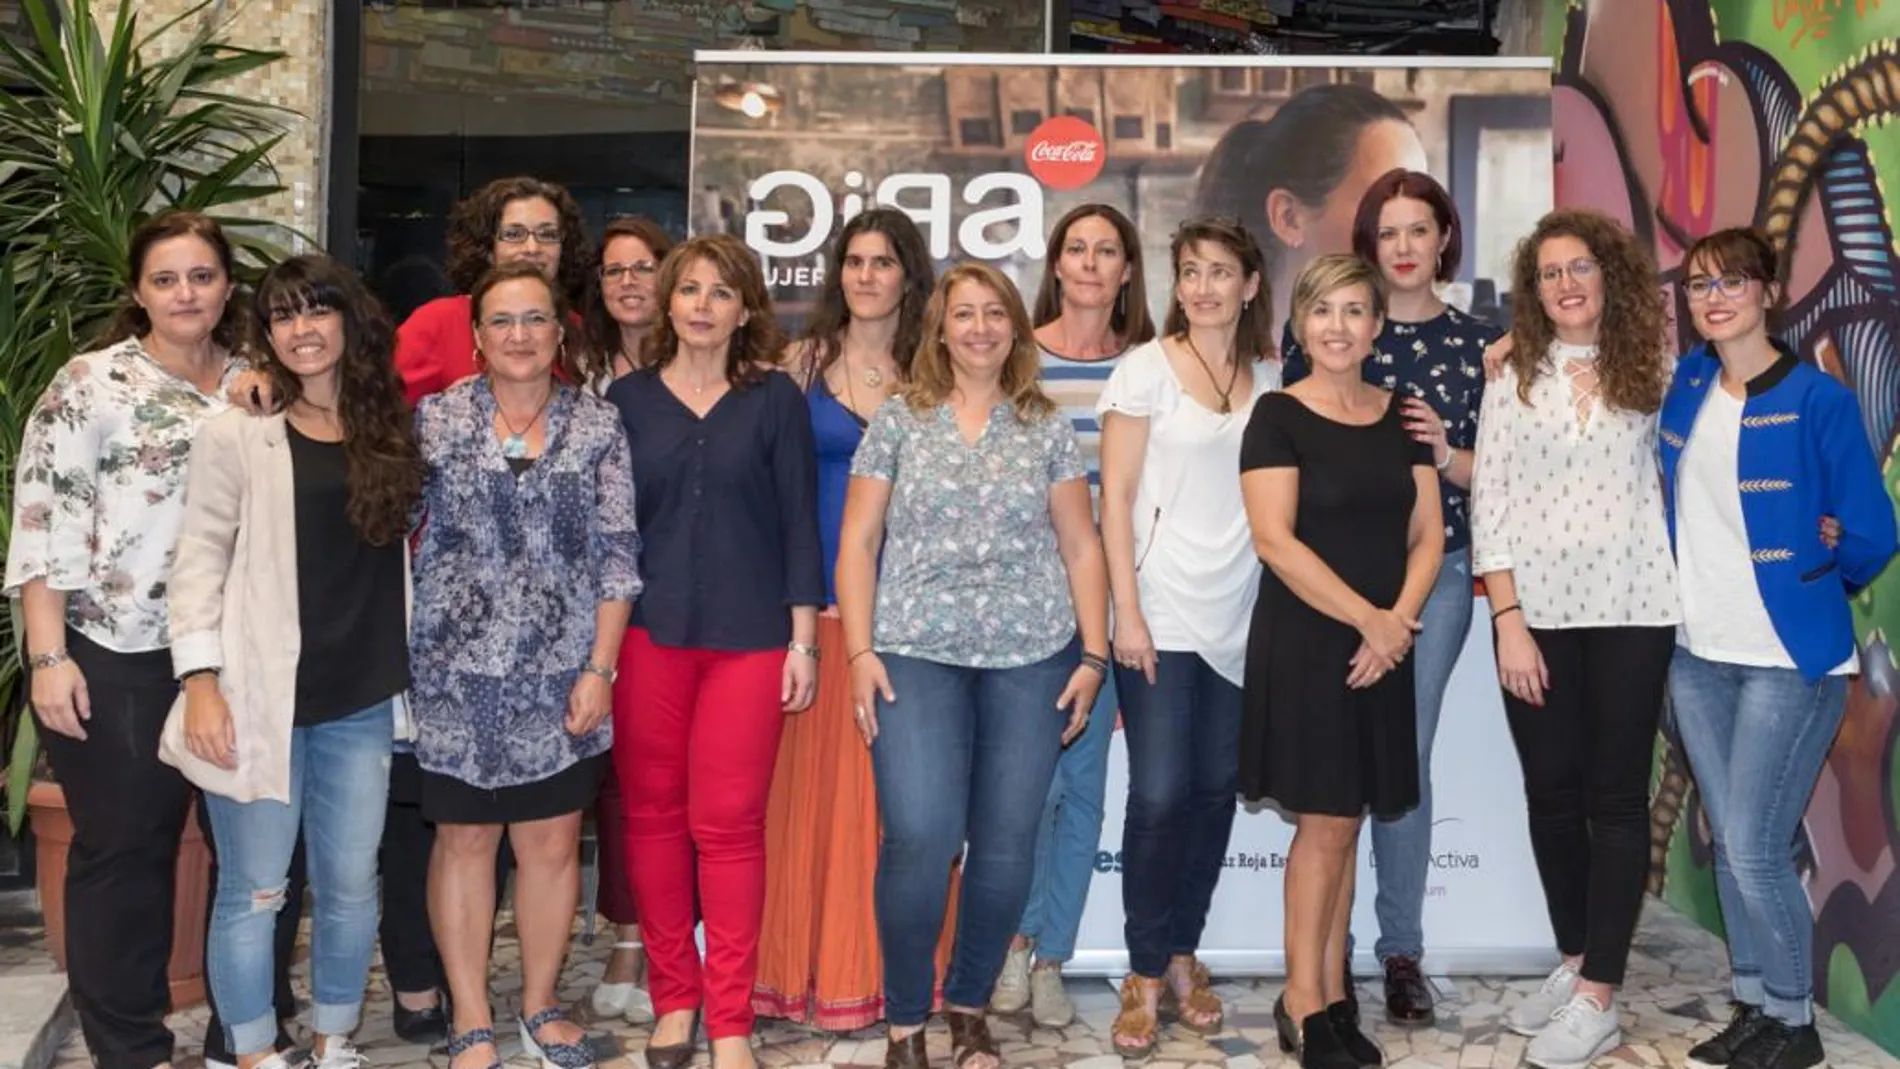 Finalistas del proyecto de emprendimiento “Gira mujeres” de Coca-Cola